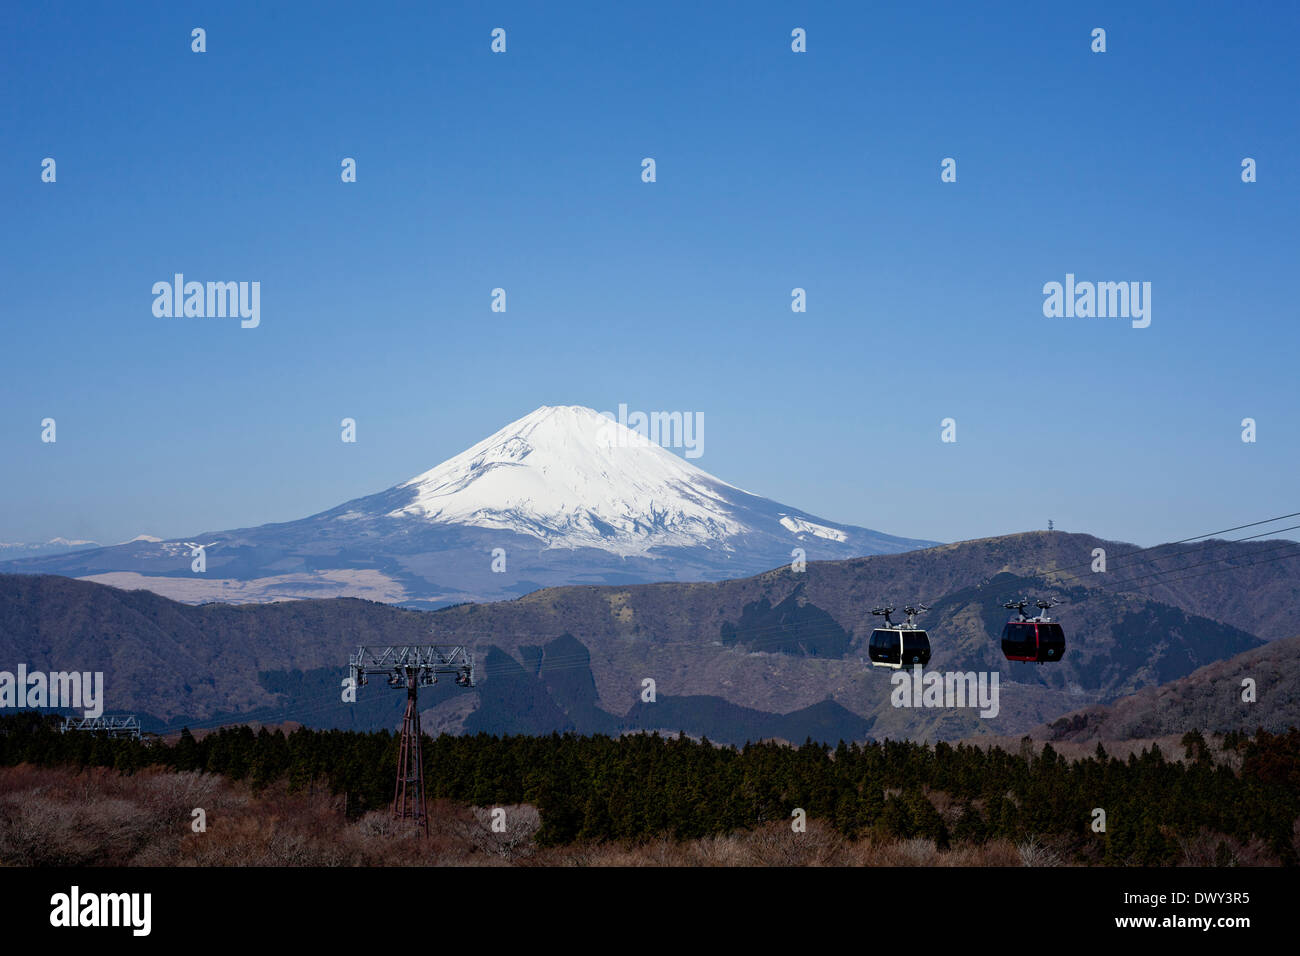 Mt, Fuji and ropeway Stock Photo